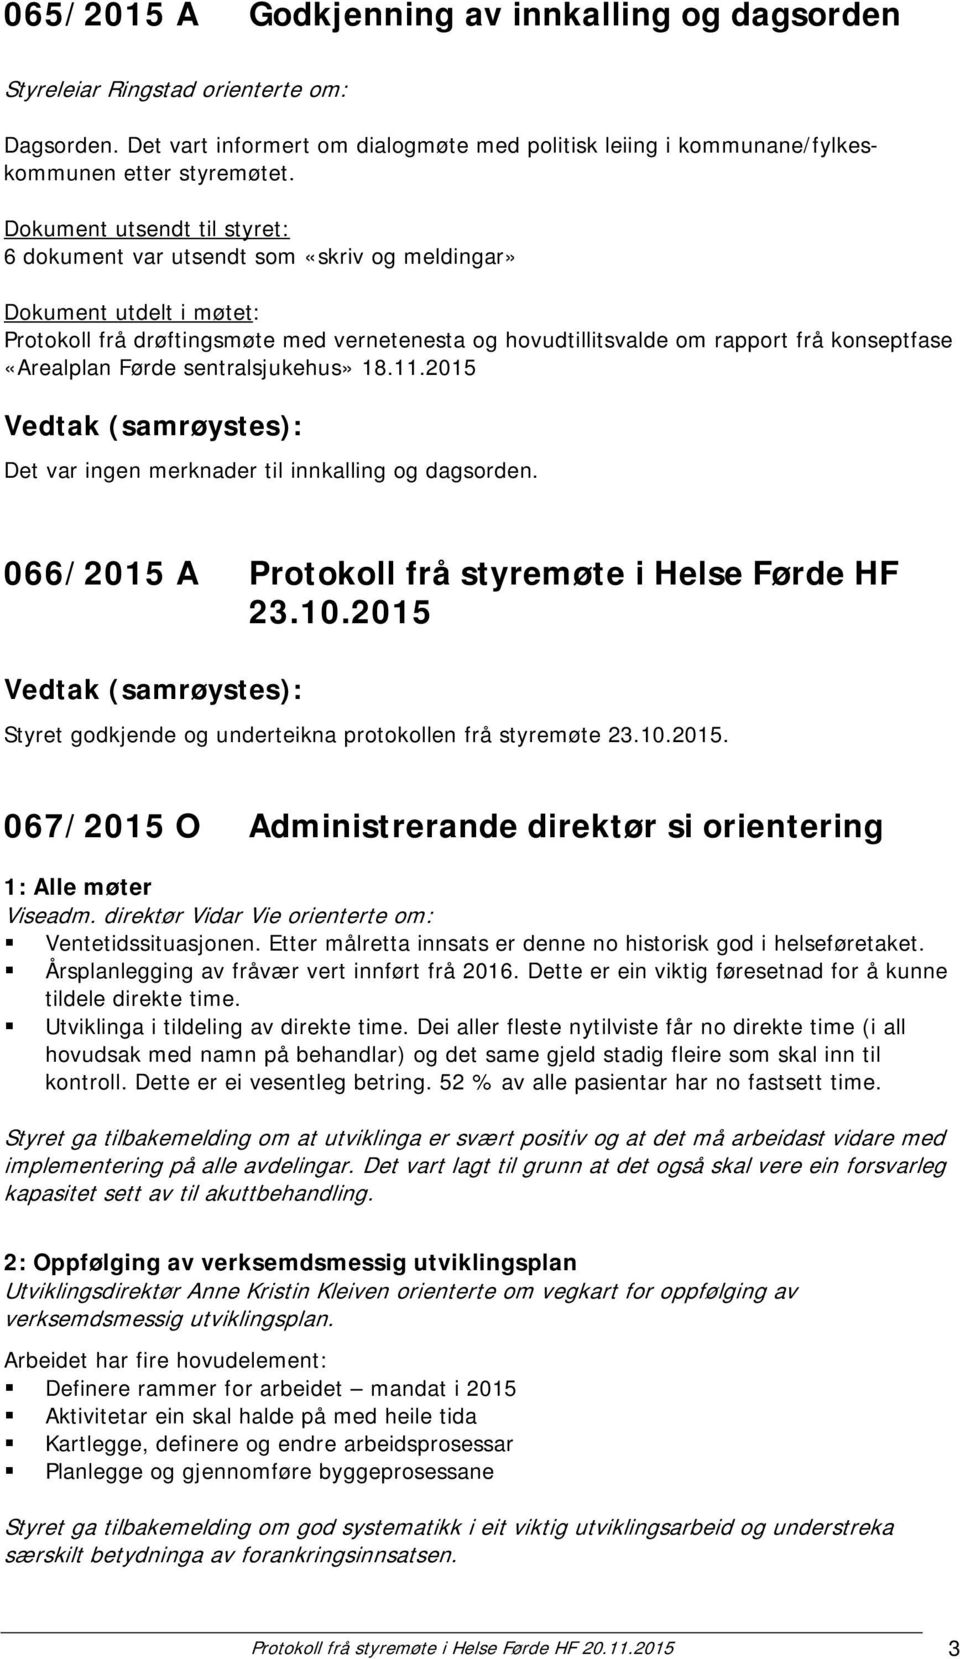 «Arealplan Førde sentralsjukehus» 18.11.2015 Det var ingen merknader til innkalling og dagsorden. 066/2015 A Protokoll frå styremøte i Helse Førde HF 23.10.